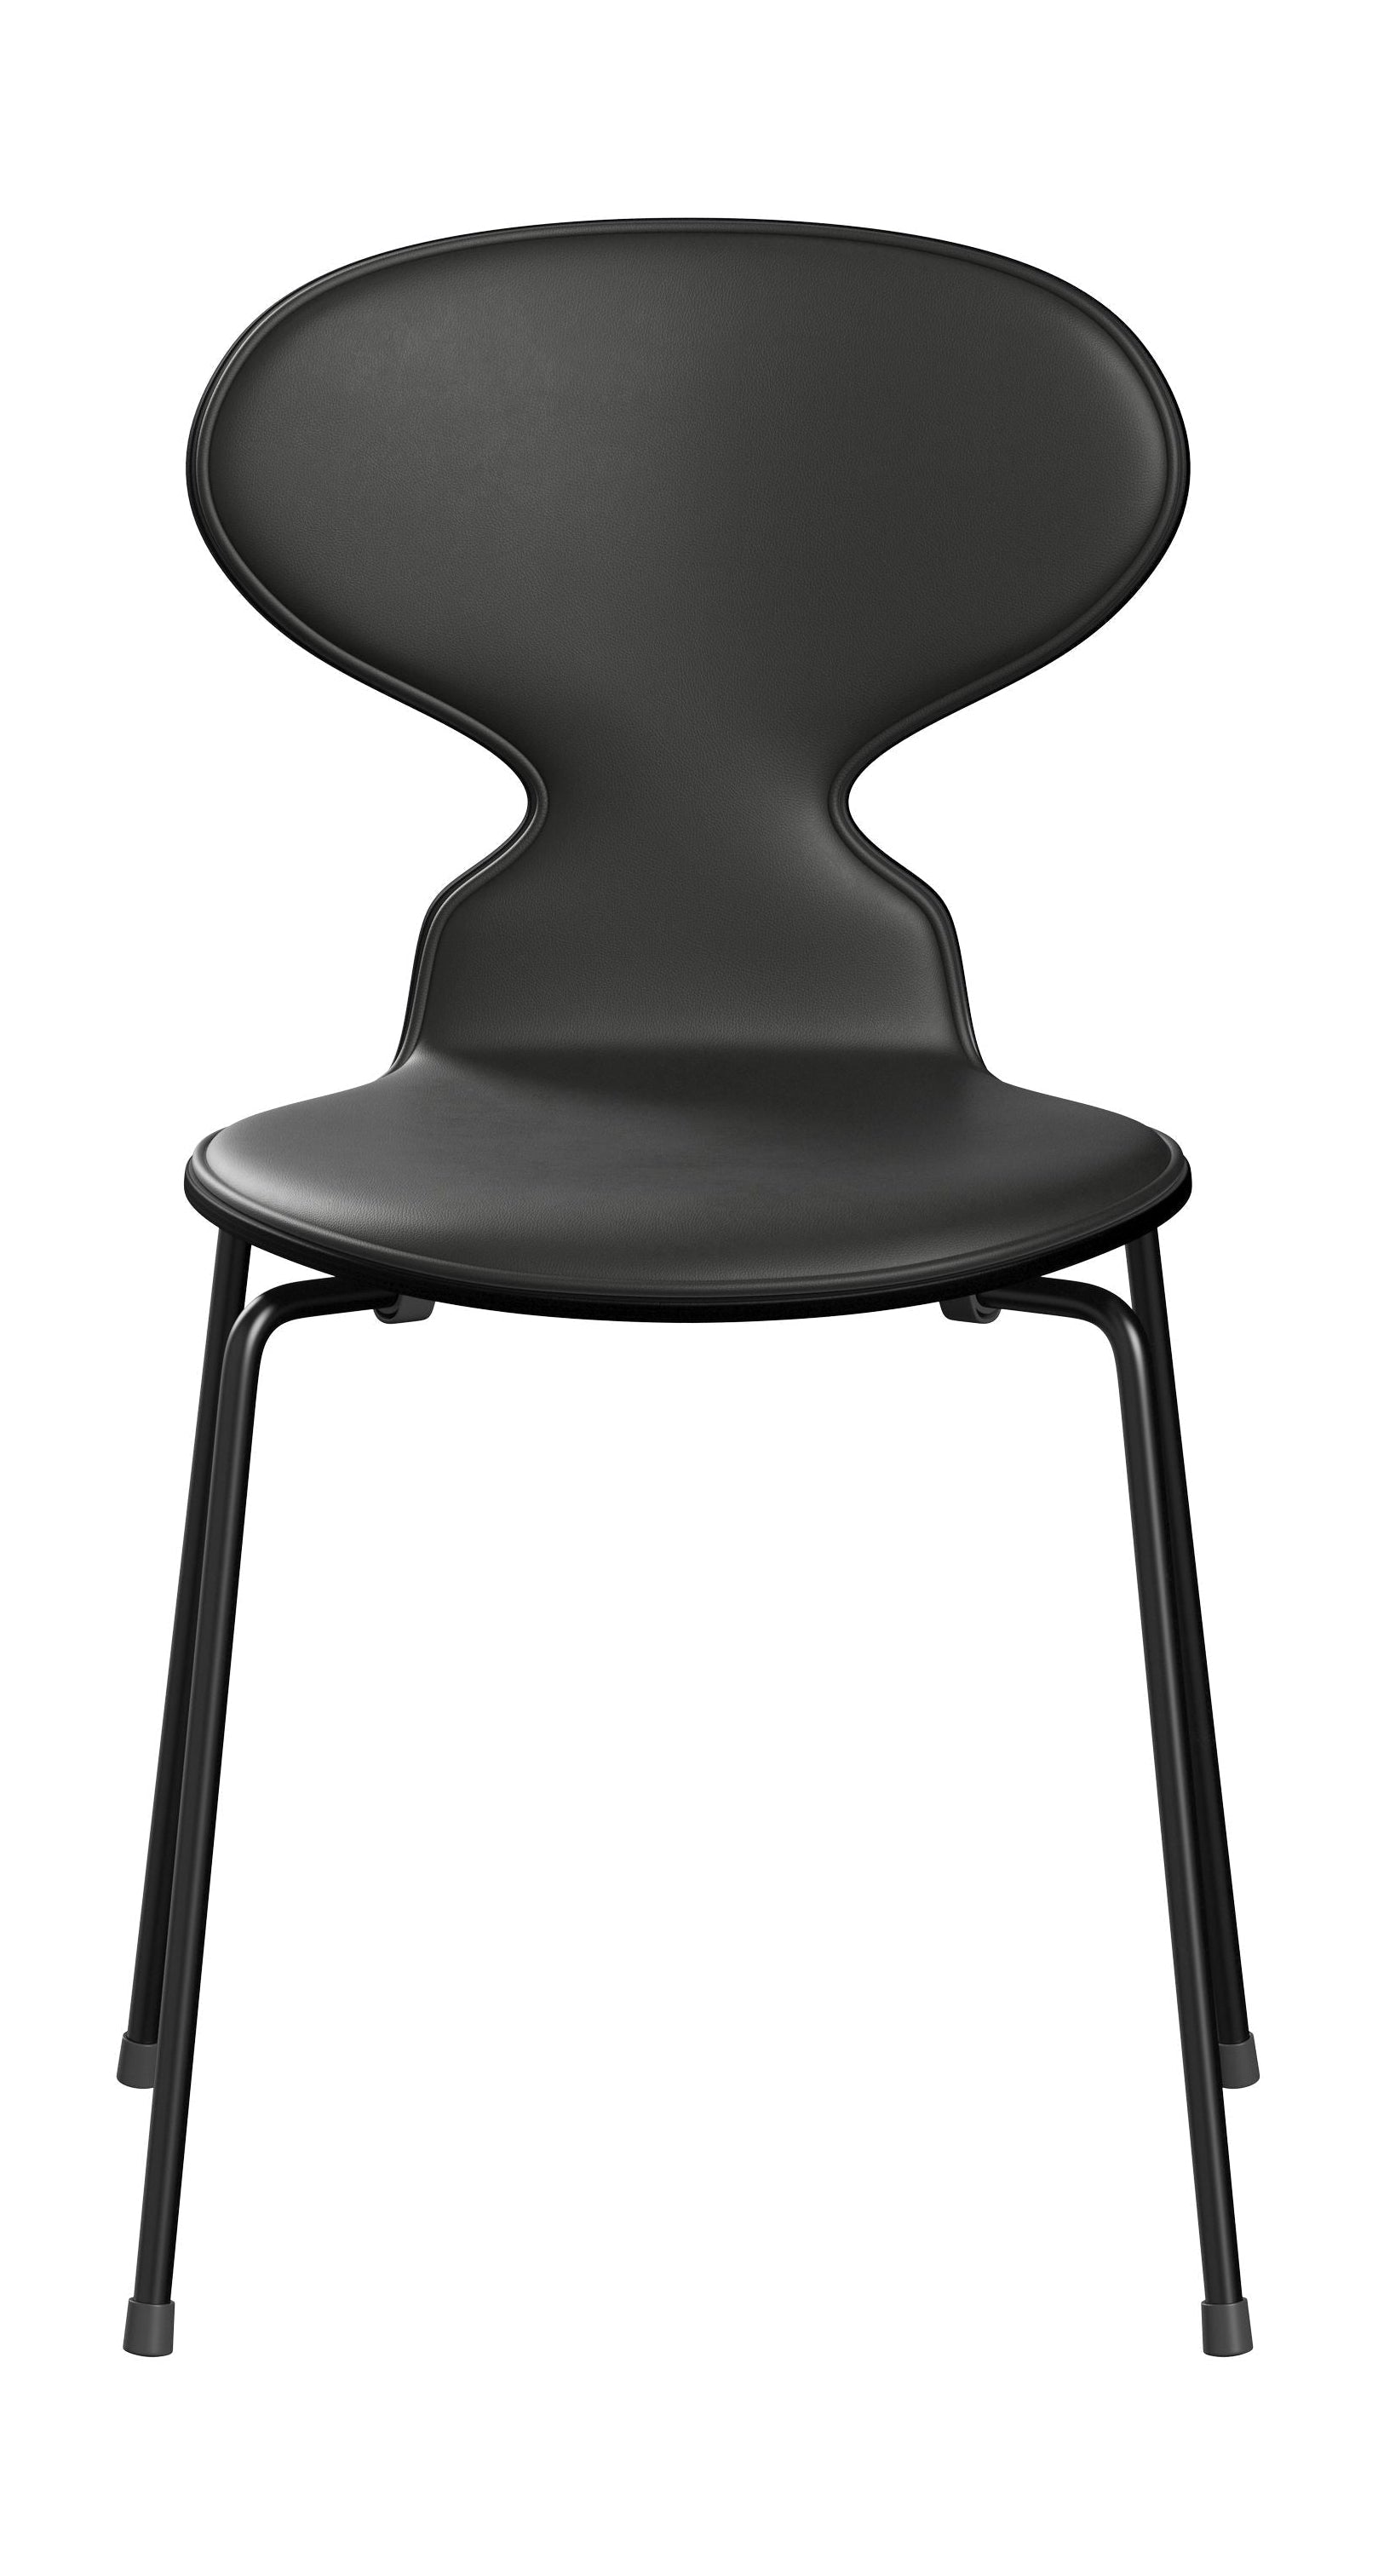 Fritz Hansen 3101 Ant tuolin etu verhoiltu, kuori: lakattu viilu musta, verhoilu: välttämätön nahka musta, pohja: teräs/musta